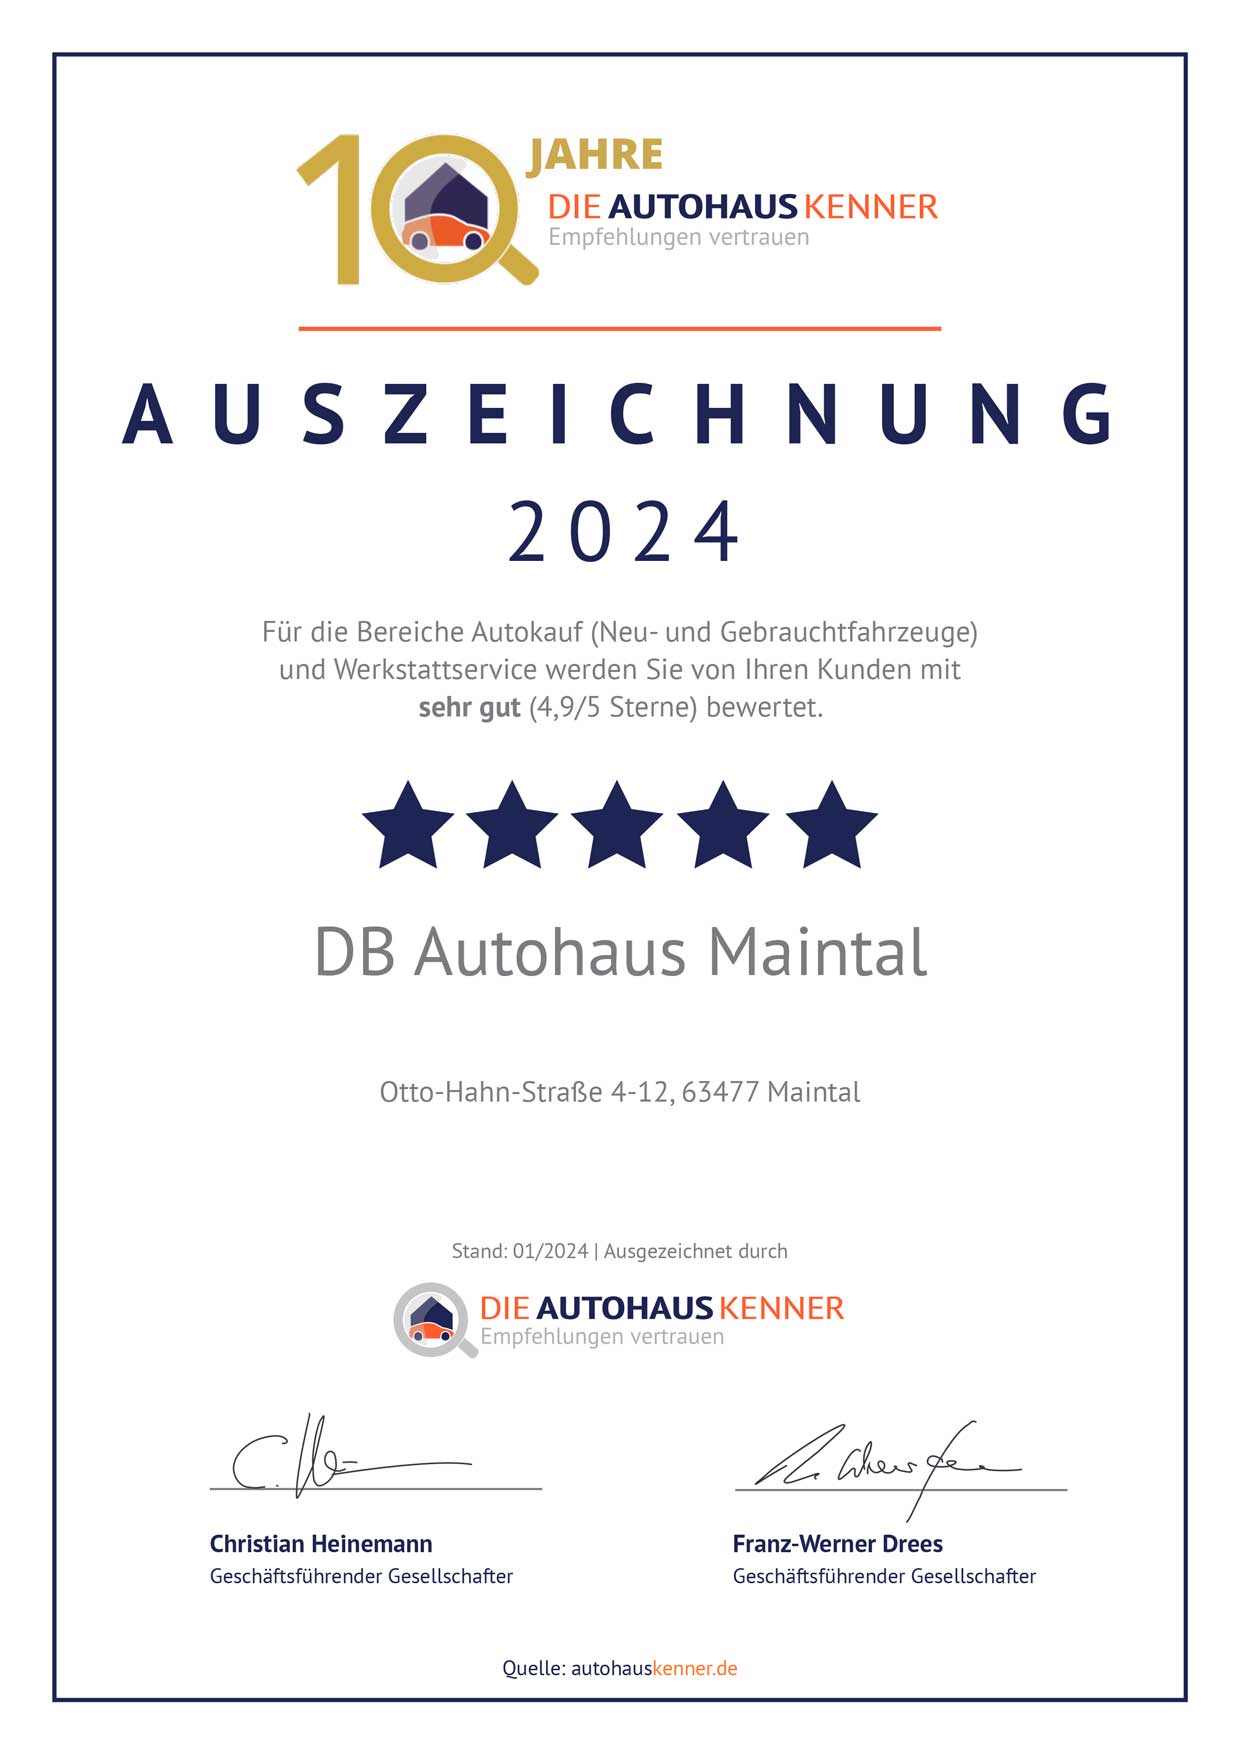 Auszeichnung von Autohauskenner für DB Autohaus Maintal